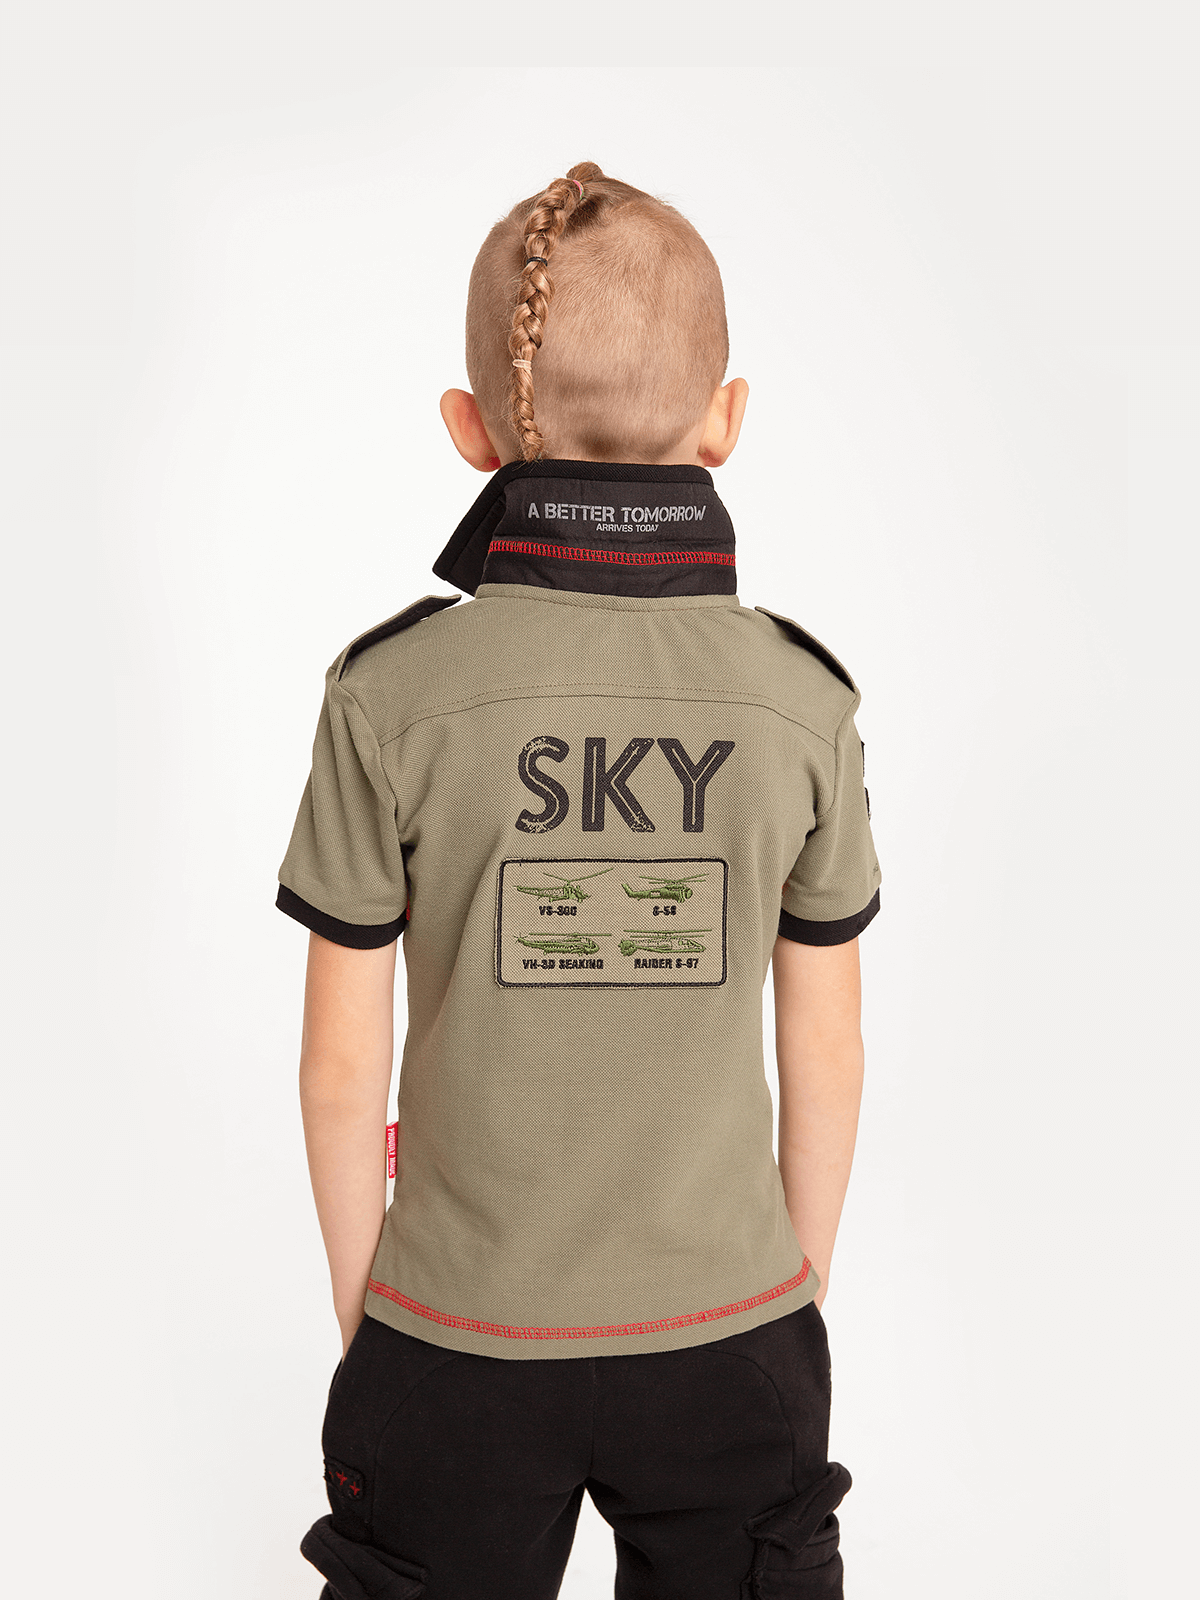 Kids Polo Shirt Sikorsky. Color khaki. 1.